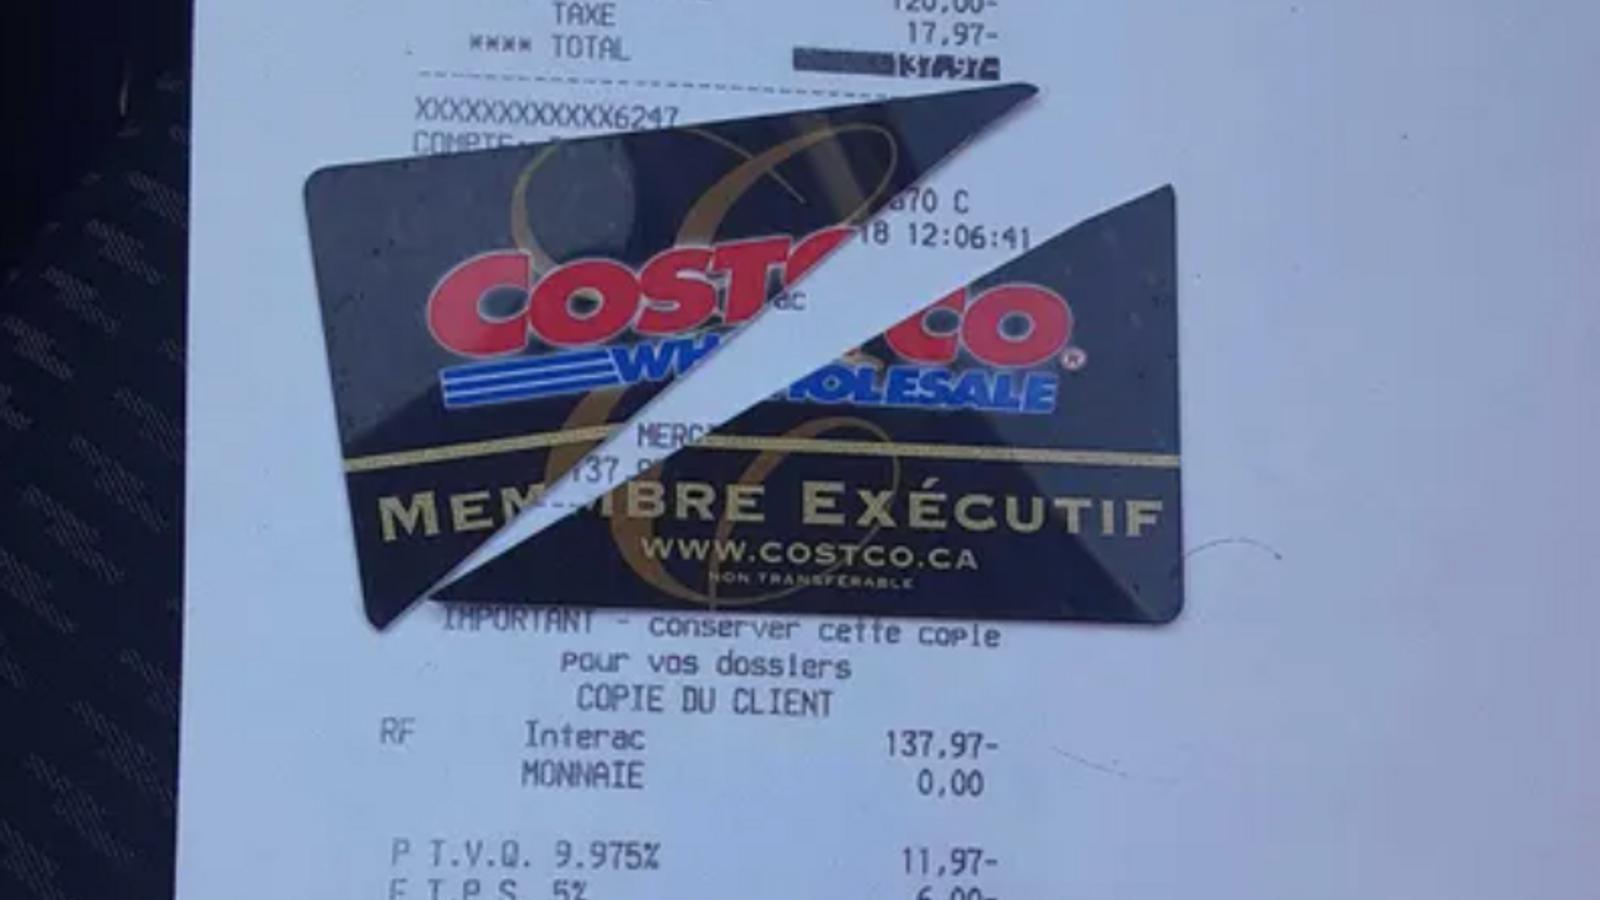 De nombreux clients du Costco découpent leur carte de membre parce qu'ils sont furieux